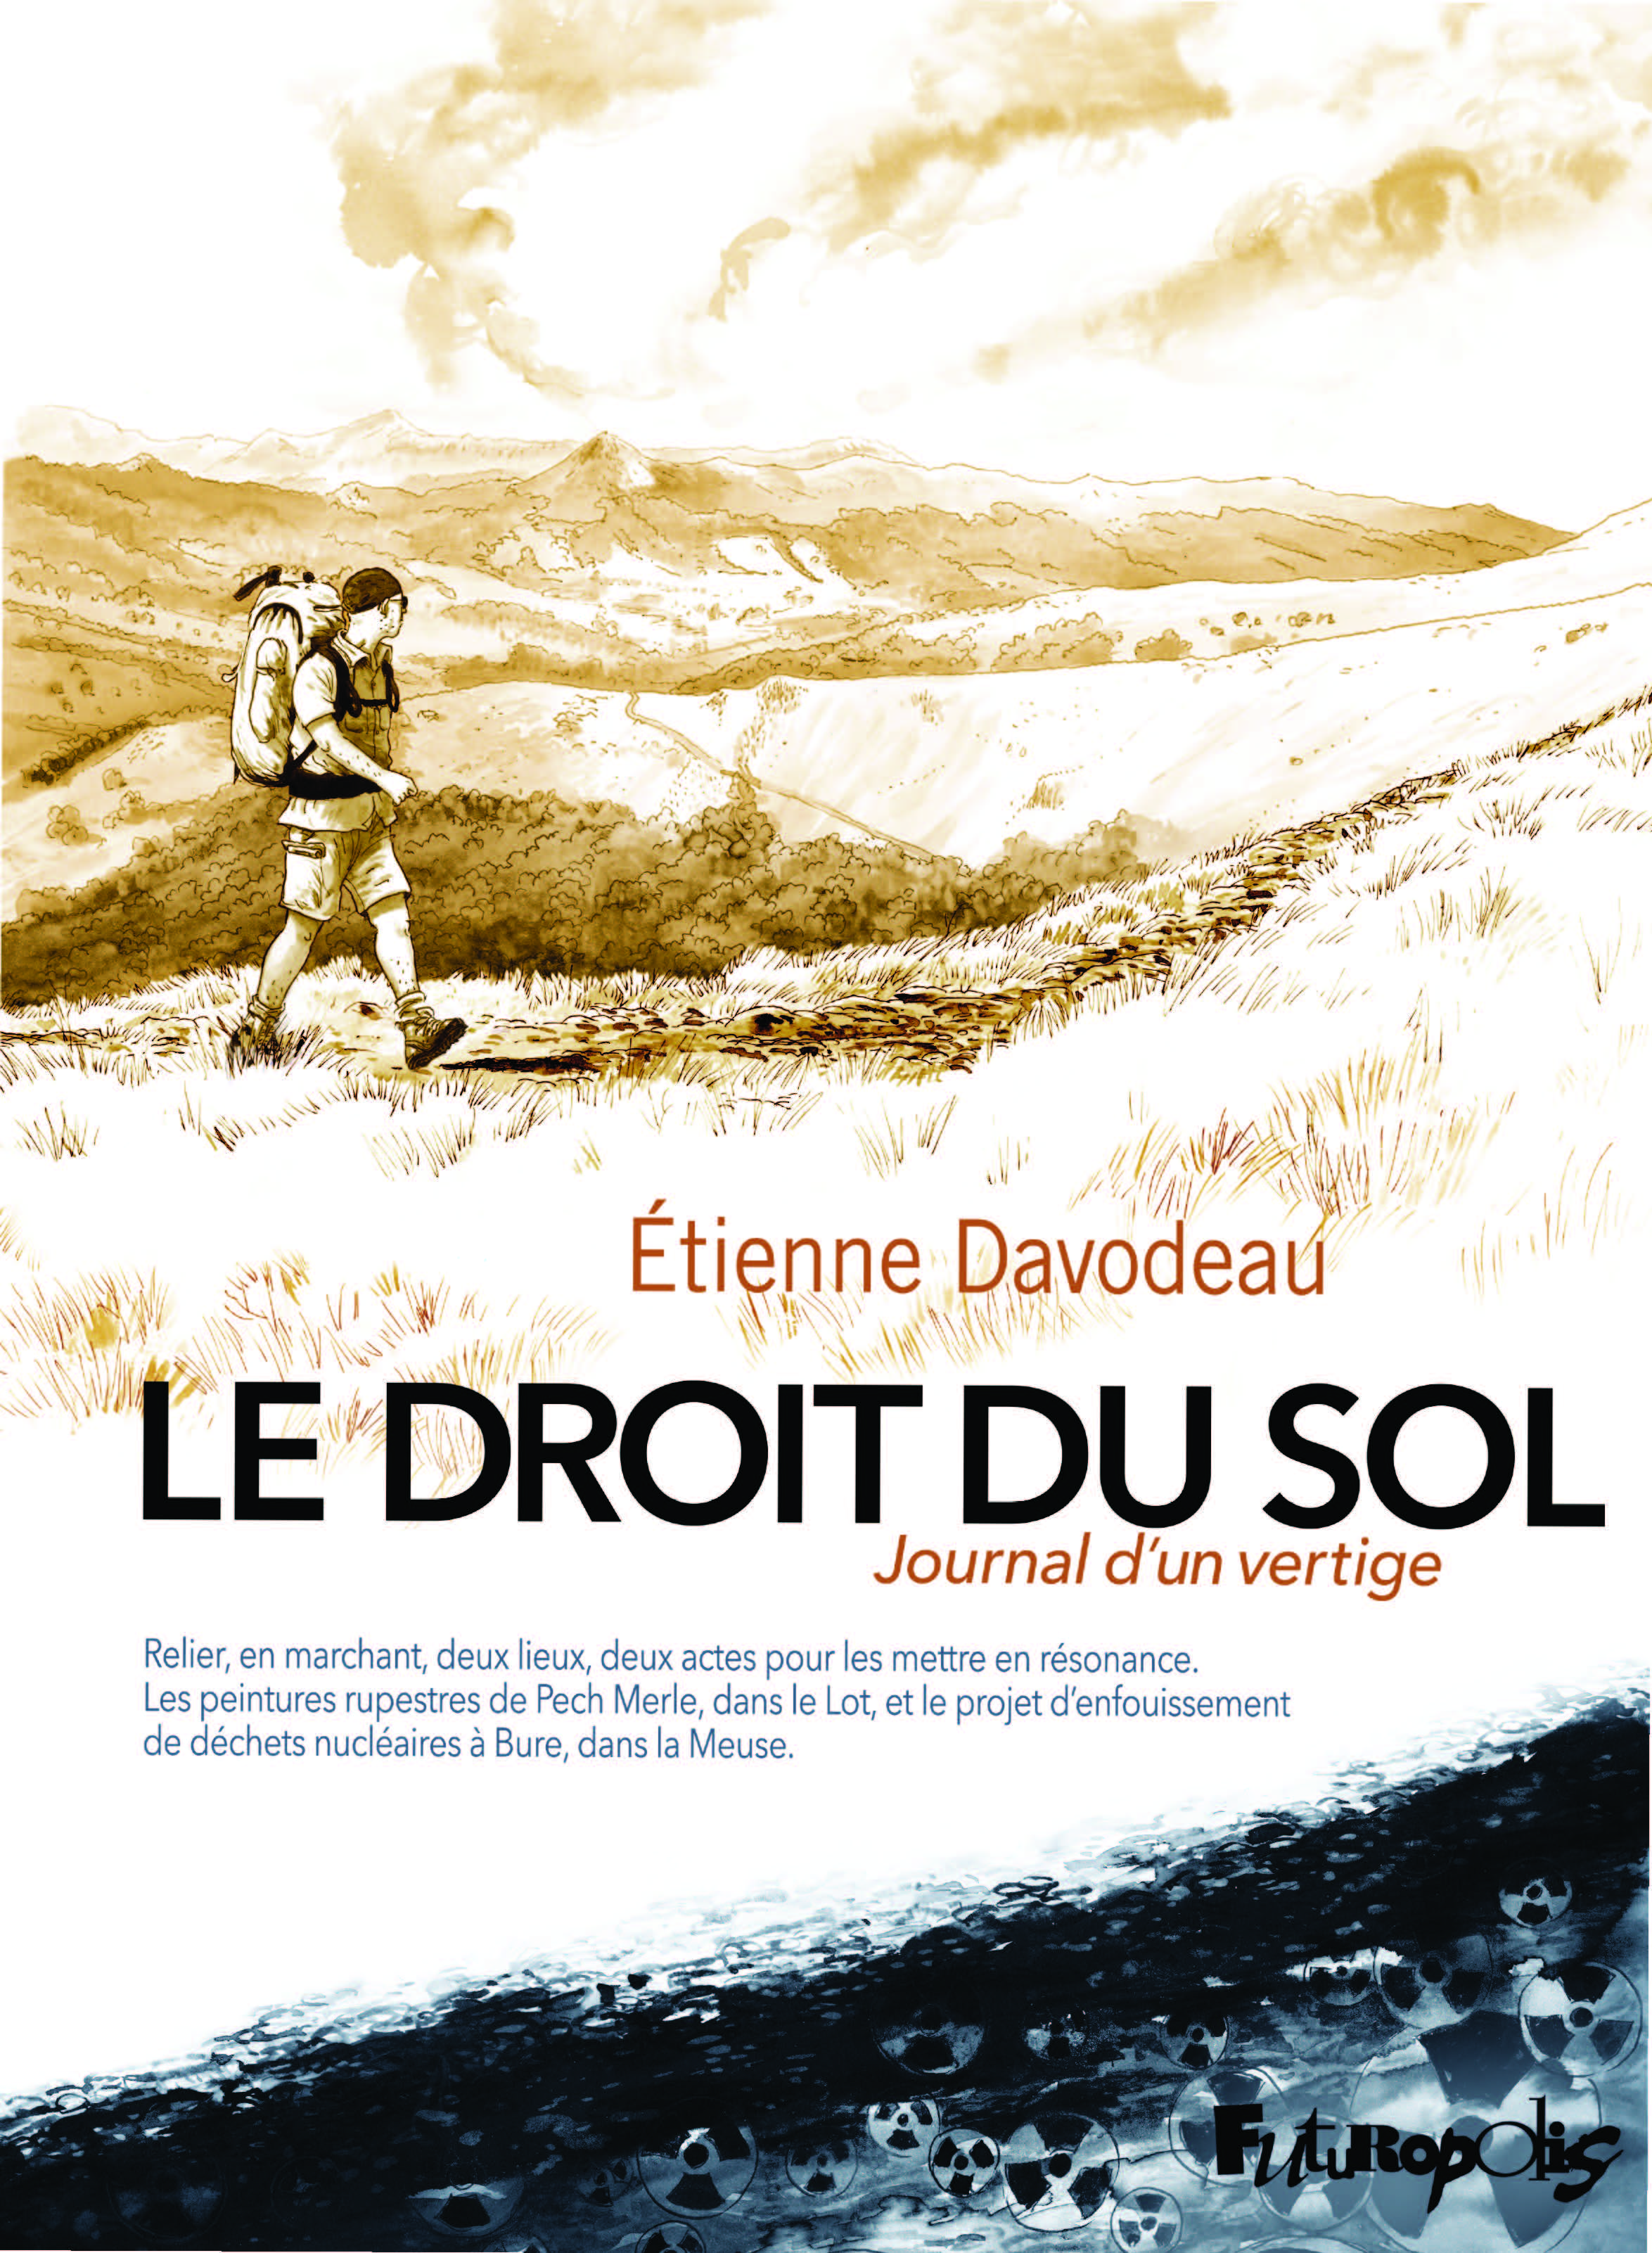 Extrait n°1 Le droit du sol  - Journal d'un vertige par Étienne Davodeau